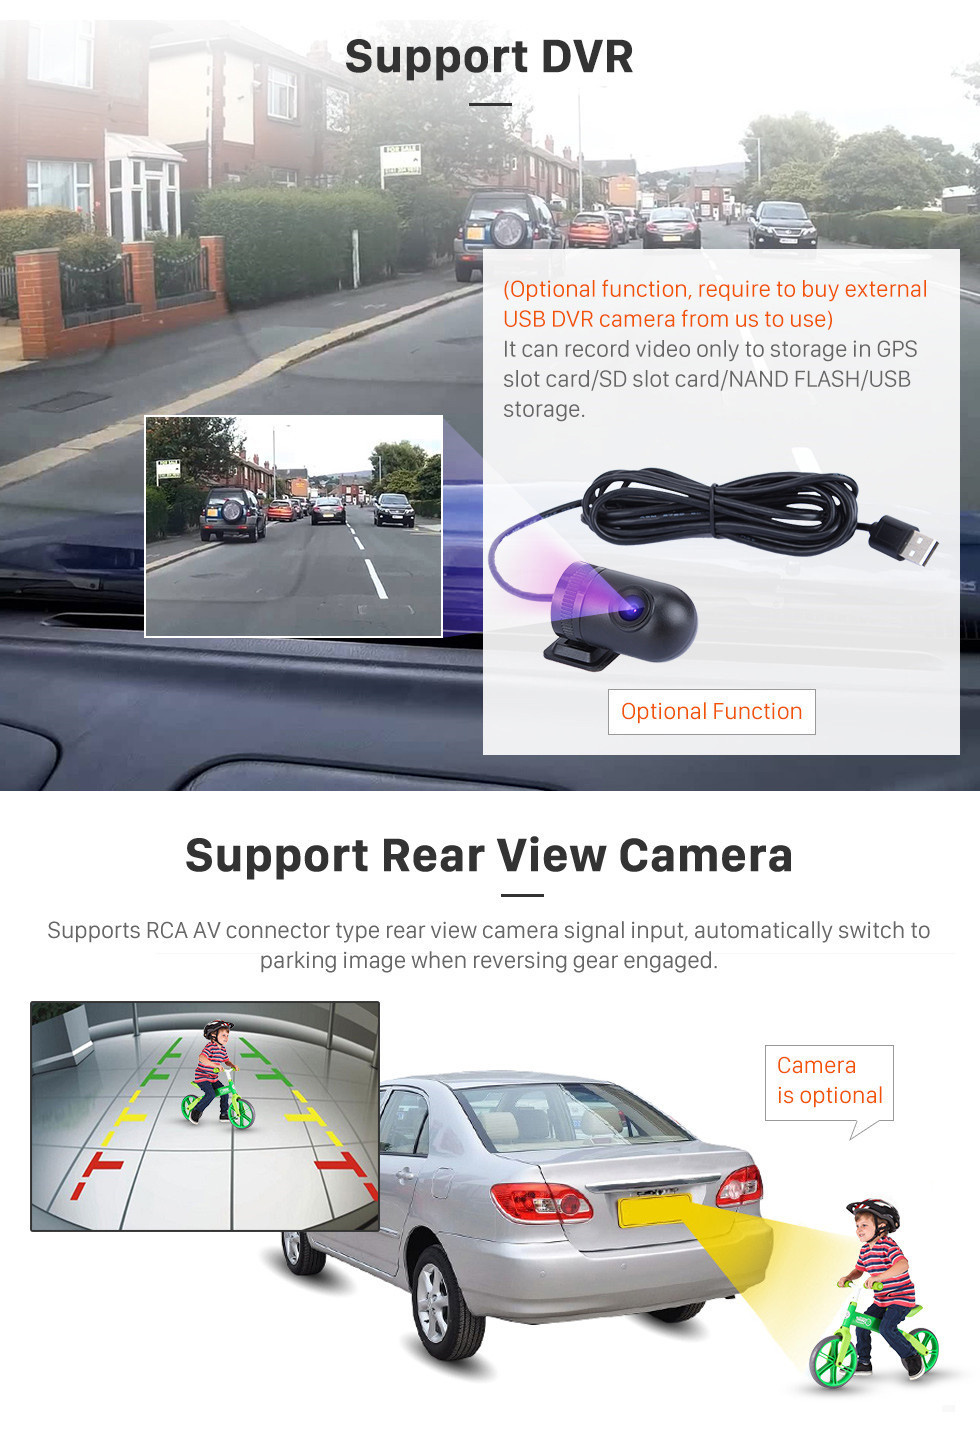 Seicane Écran tactile HD 2010-2019 Kia Carnival Android 12.0 9 pouces Navigation GPS Radio AUX support Carplay DAB + OBD2 caméra arrière